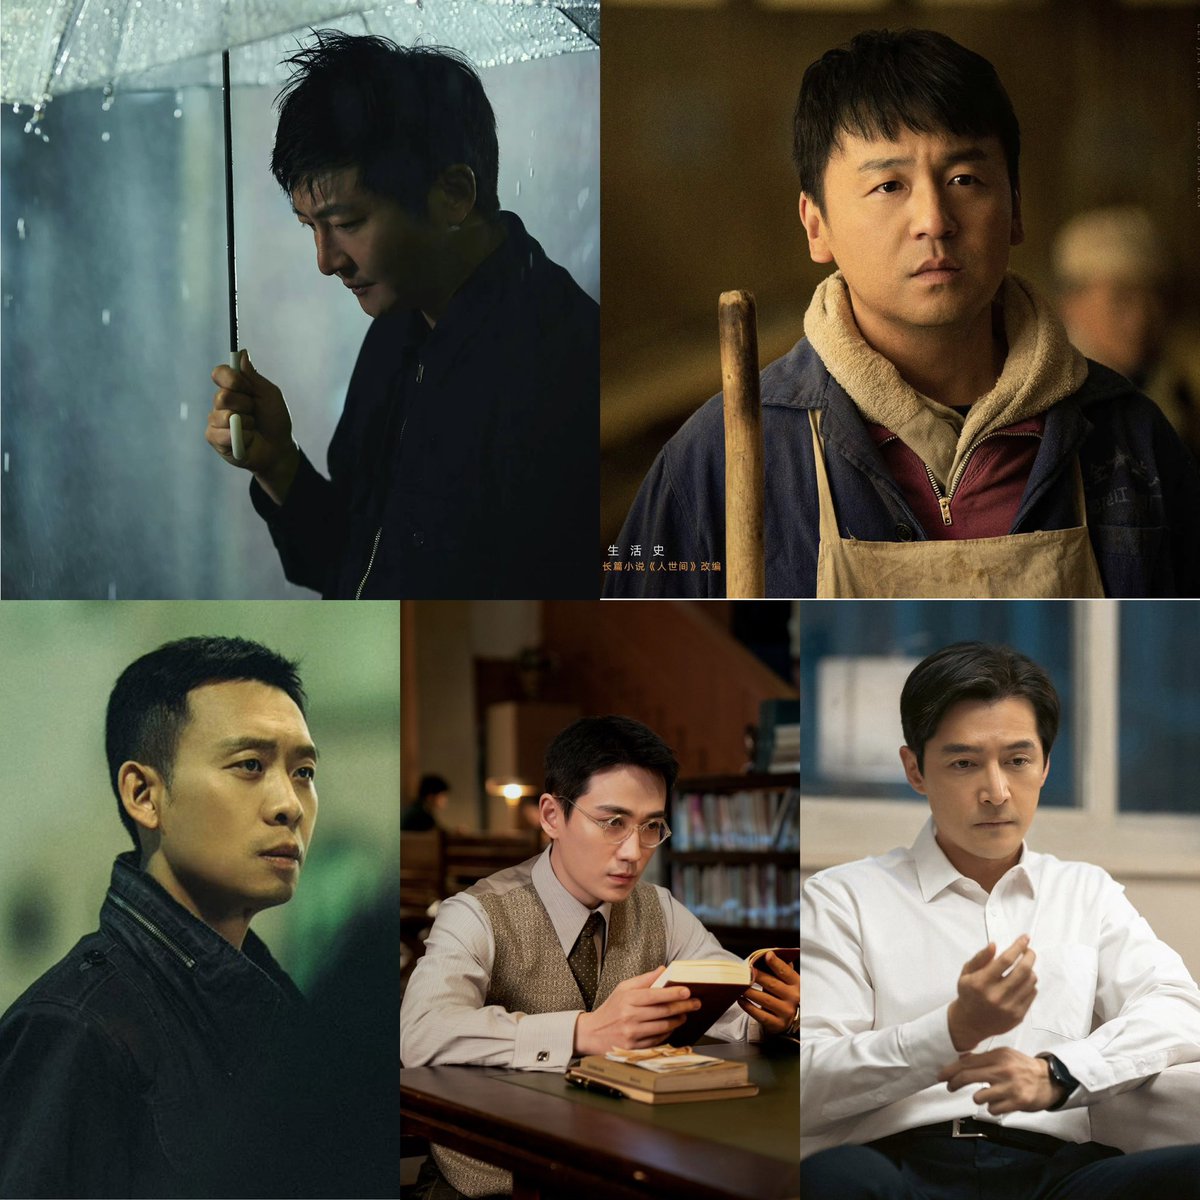 ผู้ถูกเสนอชื่อนักแสดงนำชายยอดเยี่ยมในงาน Magnolia Awards ที่จะจัดวันที่ 28 พ.ค นี้  
#GuoJingfei (#Enemy) 
#HuGe (#BrightFuture)
#LeiJiayin (#ALifelongJourney)
#ZhangYi (#TheKnockout)
#ZhuYilong (#TheRebel)
#magnoliaawards2023